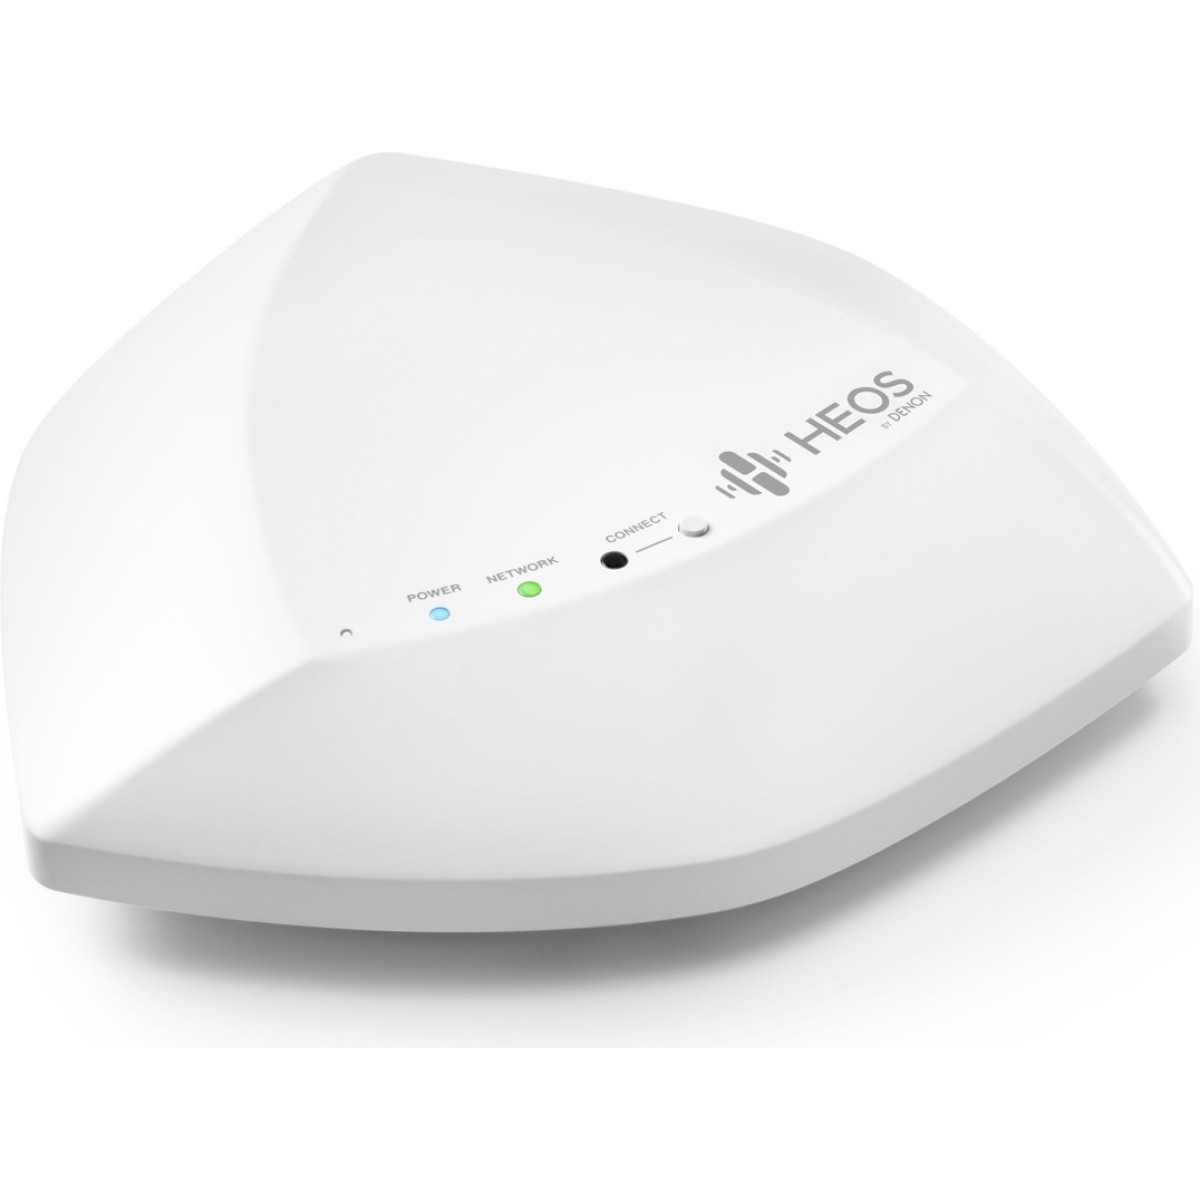 Hier sehen Sie den Artikel Heos Extend Wireless extender white aus der Kategorie Zubehör HEOS. Dieser Artikel ist erhältlich bei cebrands.ch